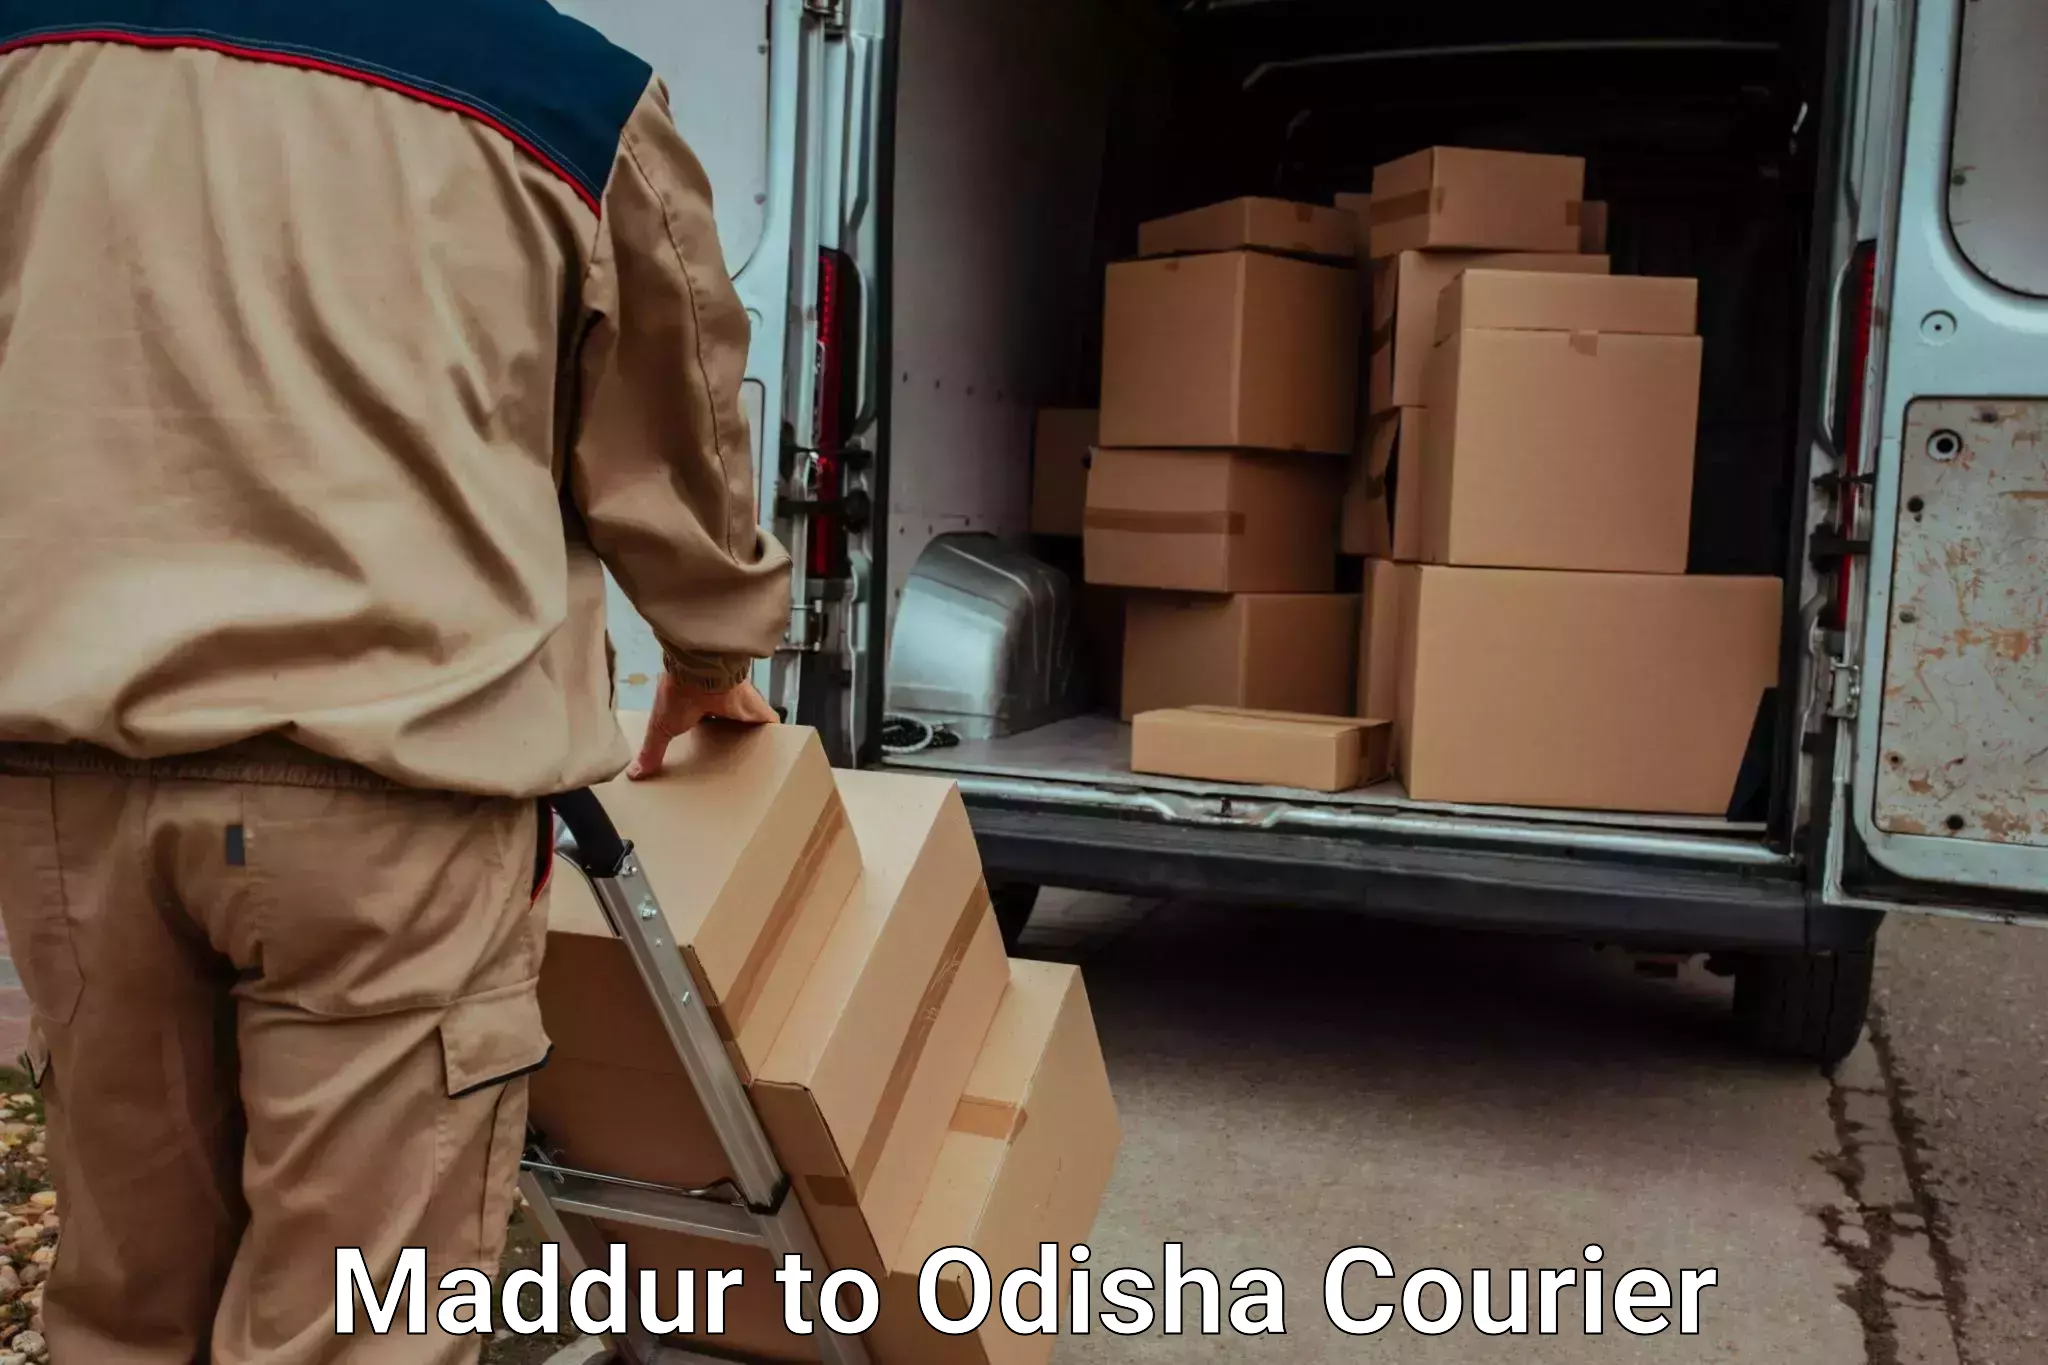 Online luggage shipping booking Maddur to Ukhunda